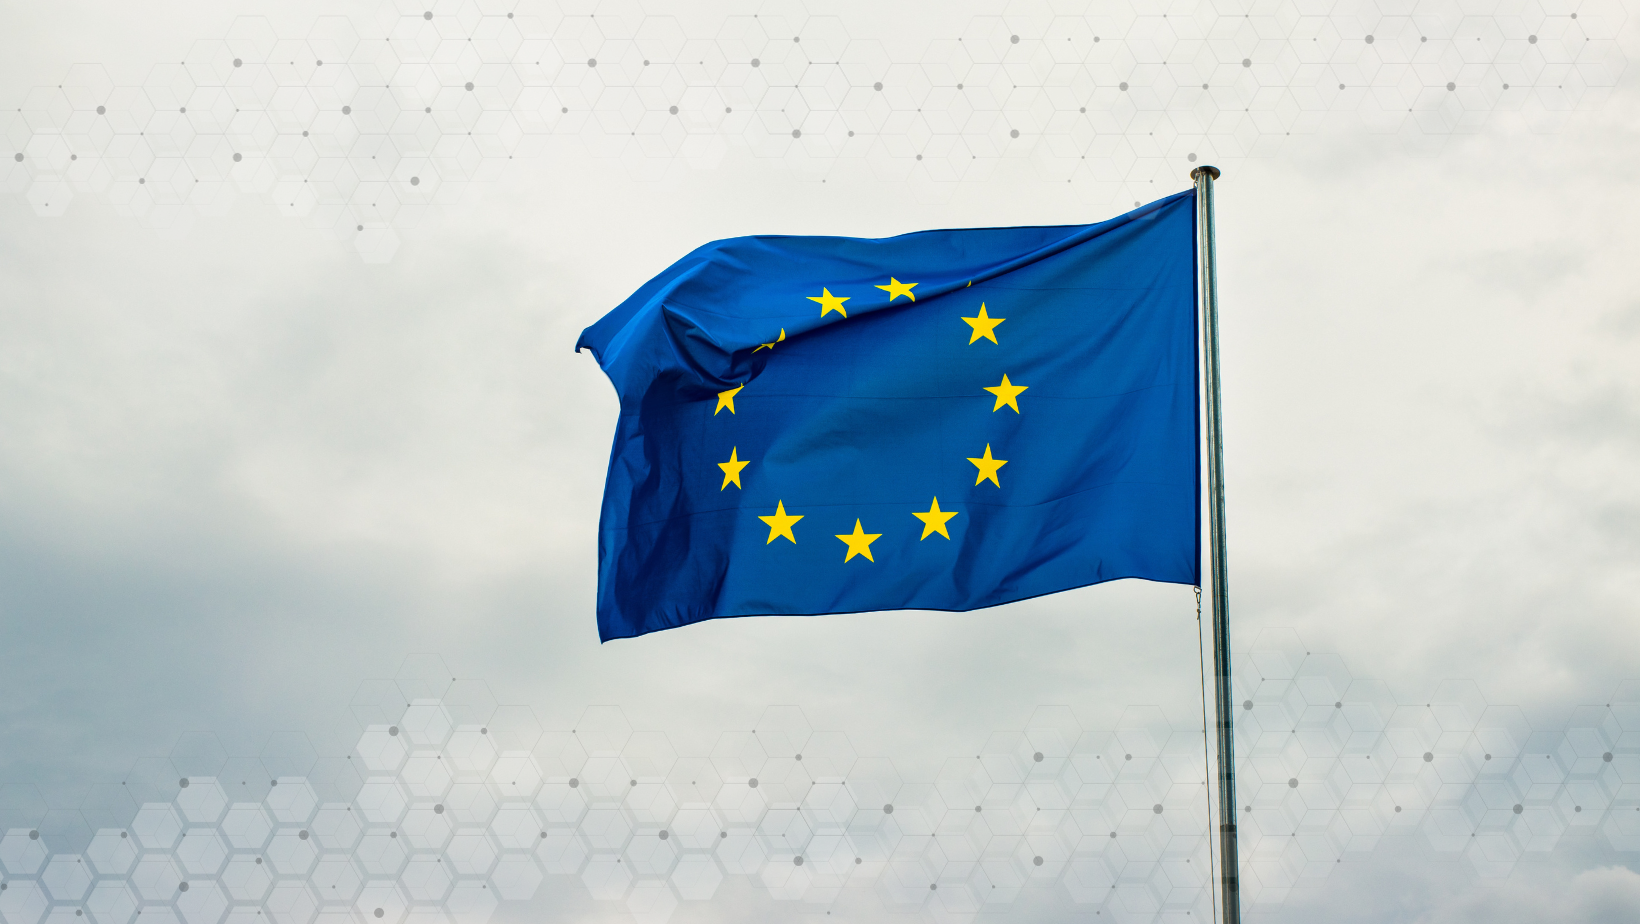 The European flag waving on a flagpole against a cloudy sky